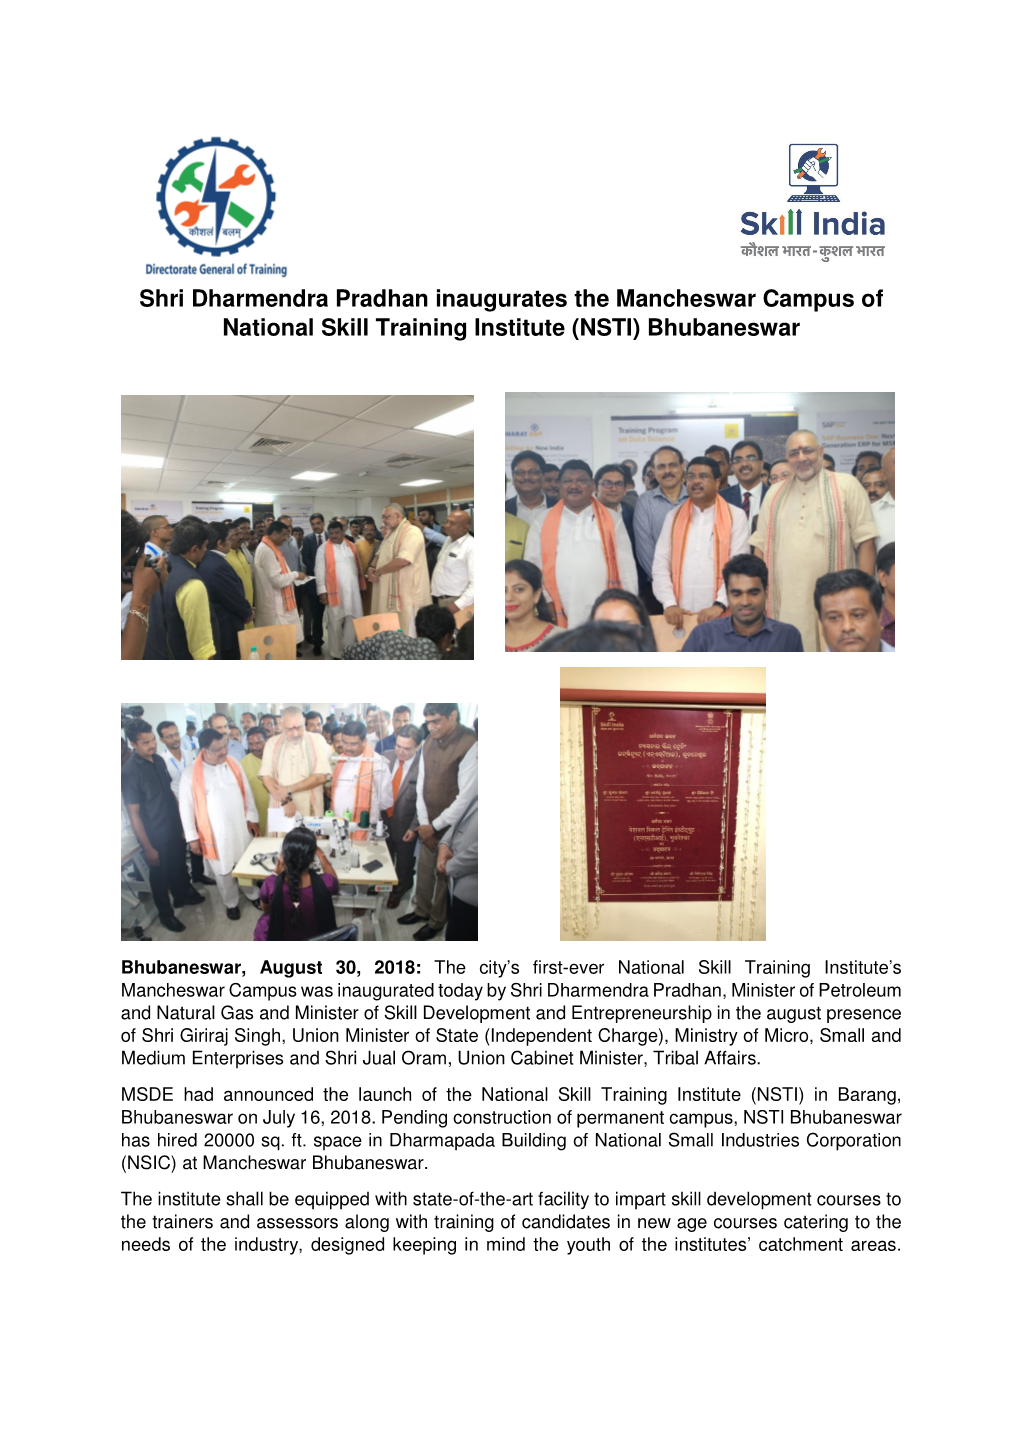 Shri Dharmendra Pradhan Inaugurates the Mancheswar Campus of National Skill Training Institute (NSTI) Bhubaneswar